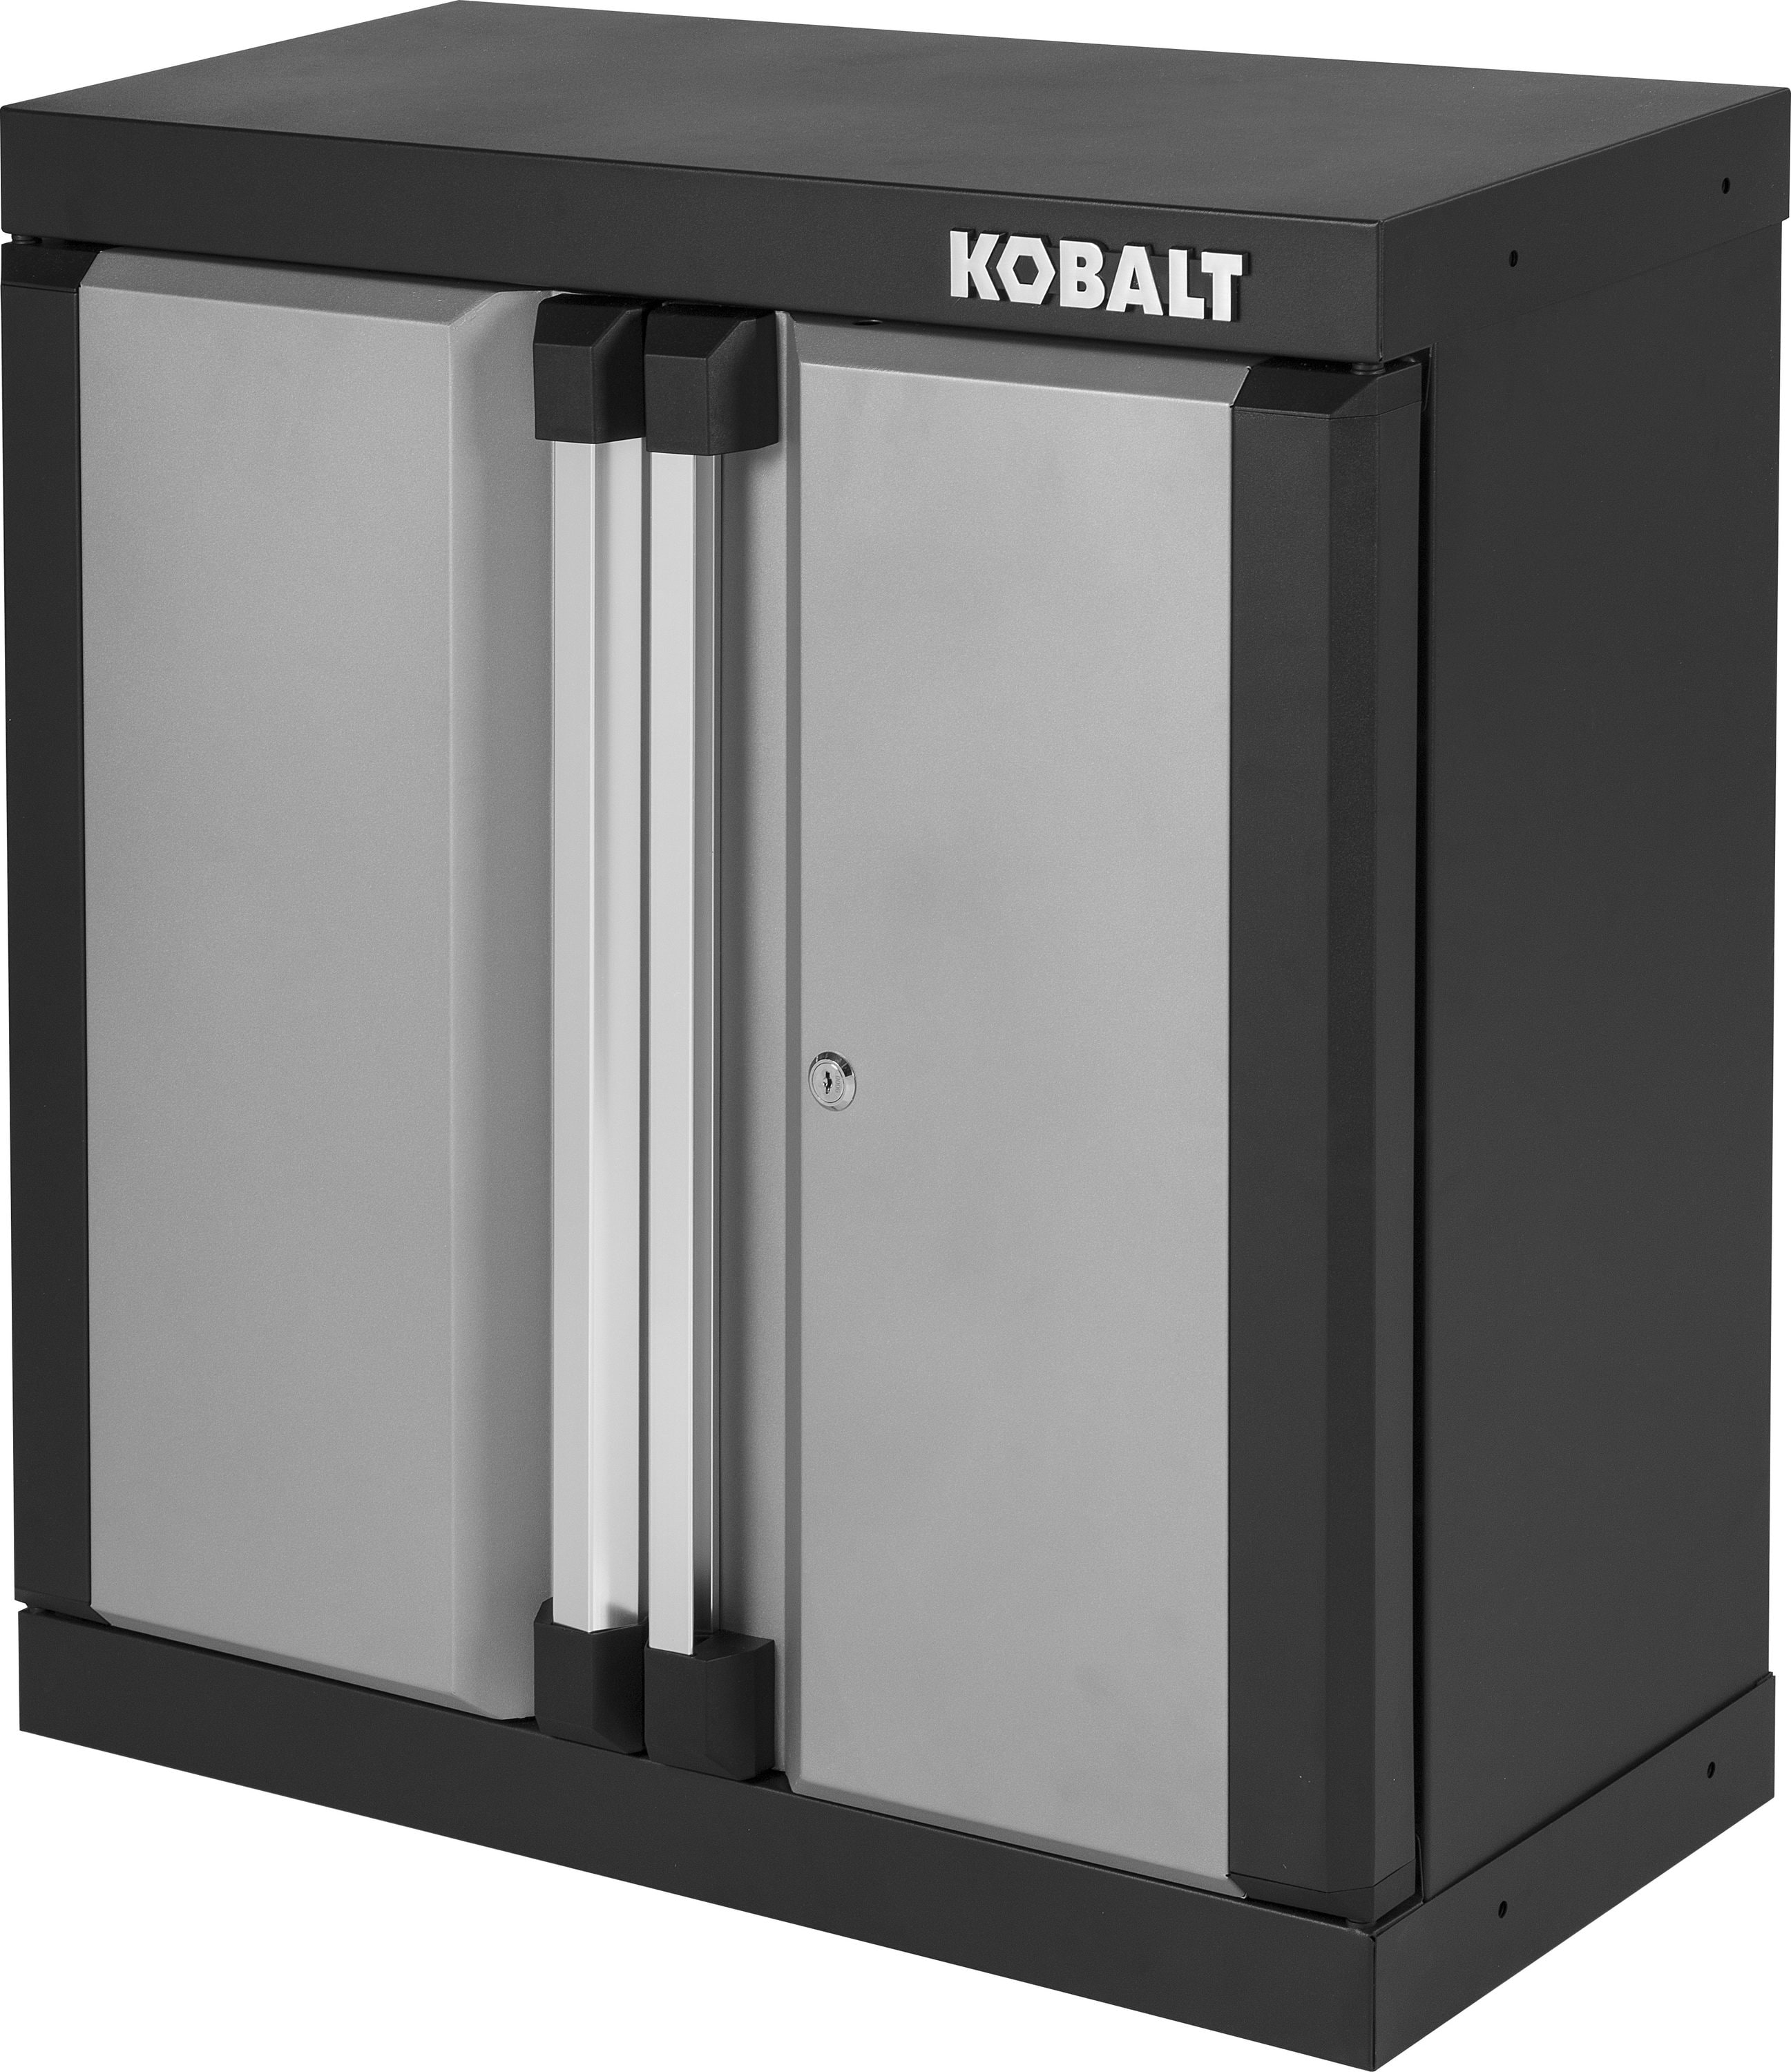 Kobalt 12 5 In W X 28 H D Steel Wall Mounted Garage Cabinet